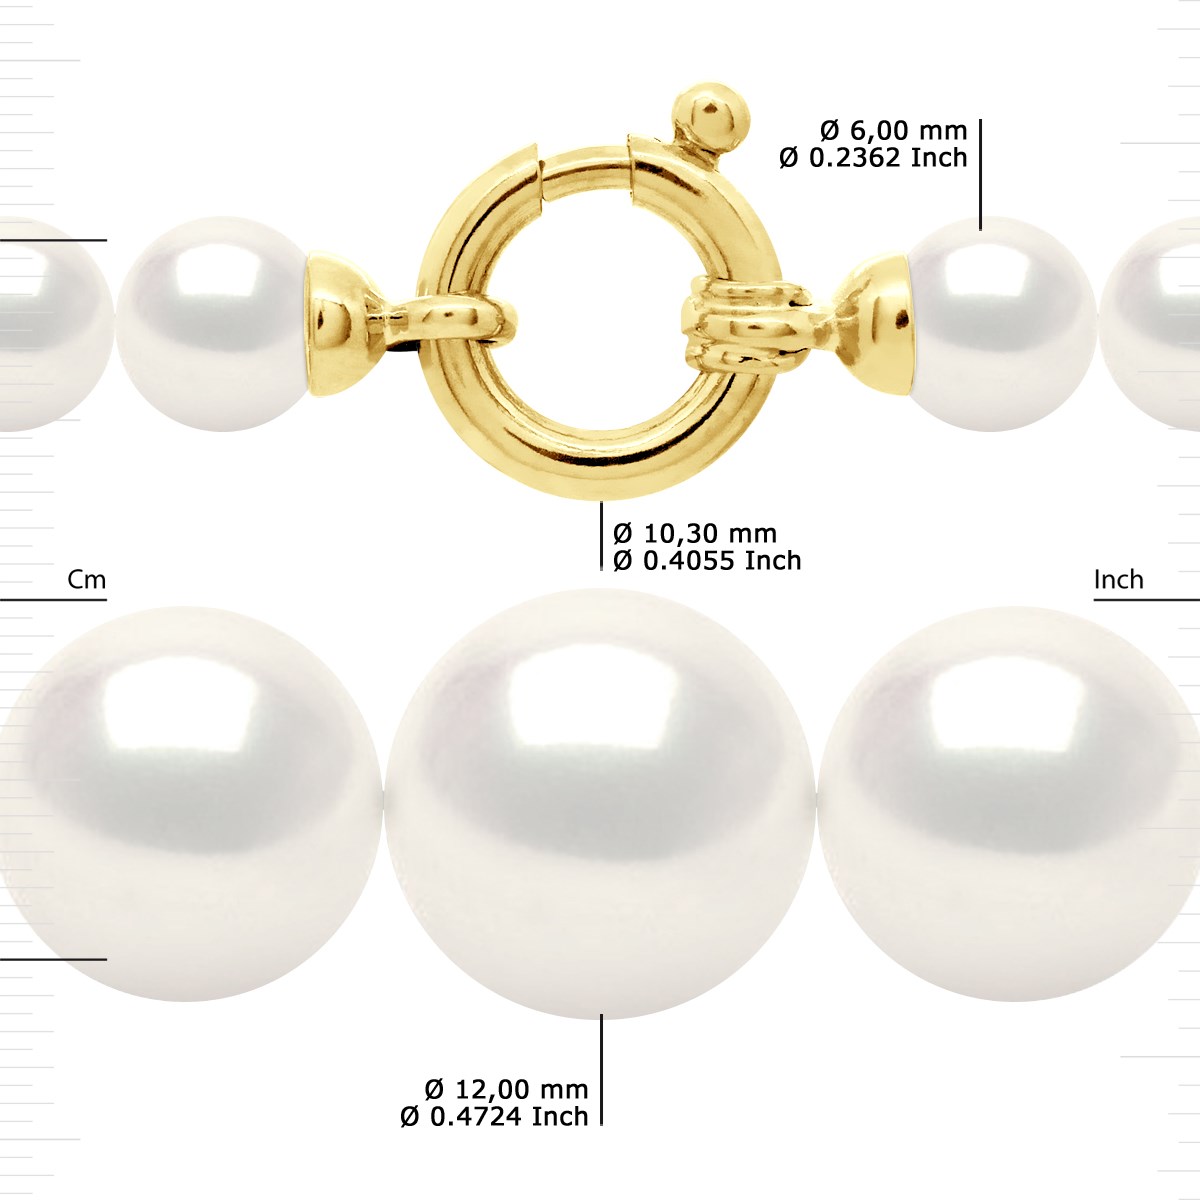 Collier Rang 'Princesse' - Véritables Perles de Culture d'Eau Douce Rondes de 12 à 6 mm - Blanc Naturel - Or Jaune 750 Millièmes - vue 3